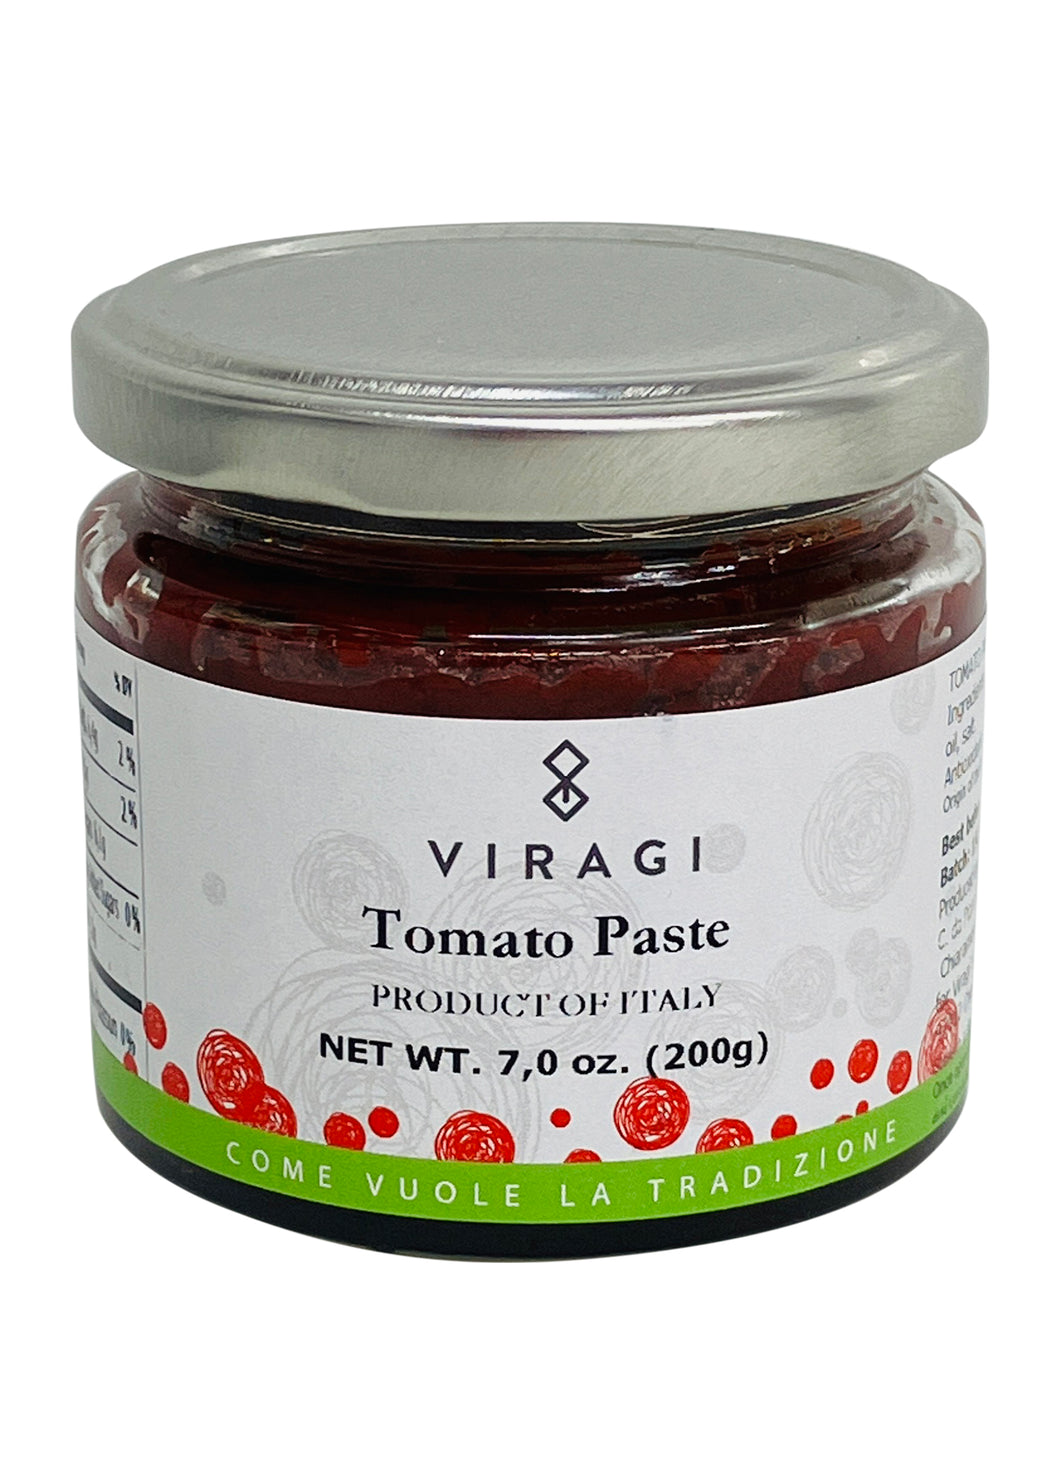 Viragi Estratto di Pomodoro (Tomato Paste)